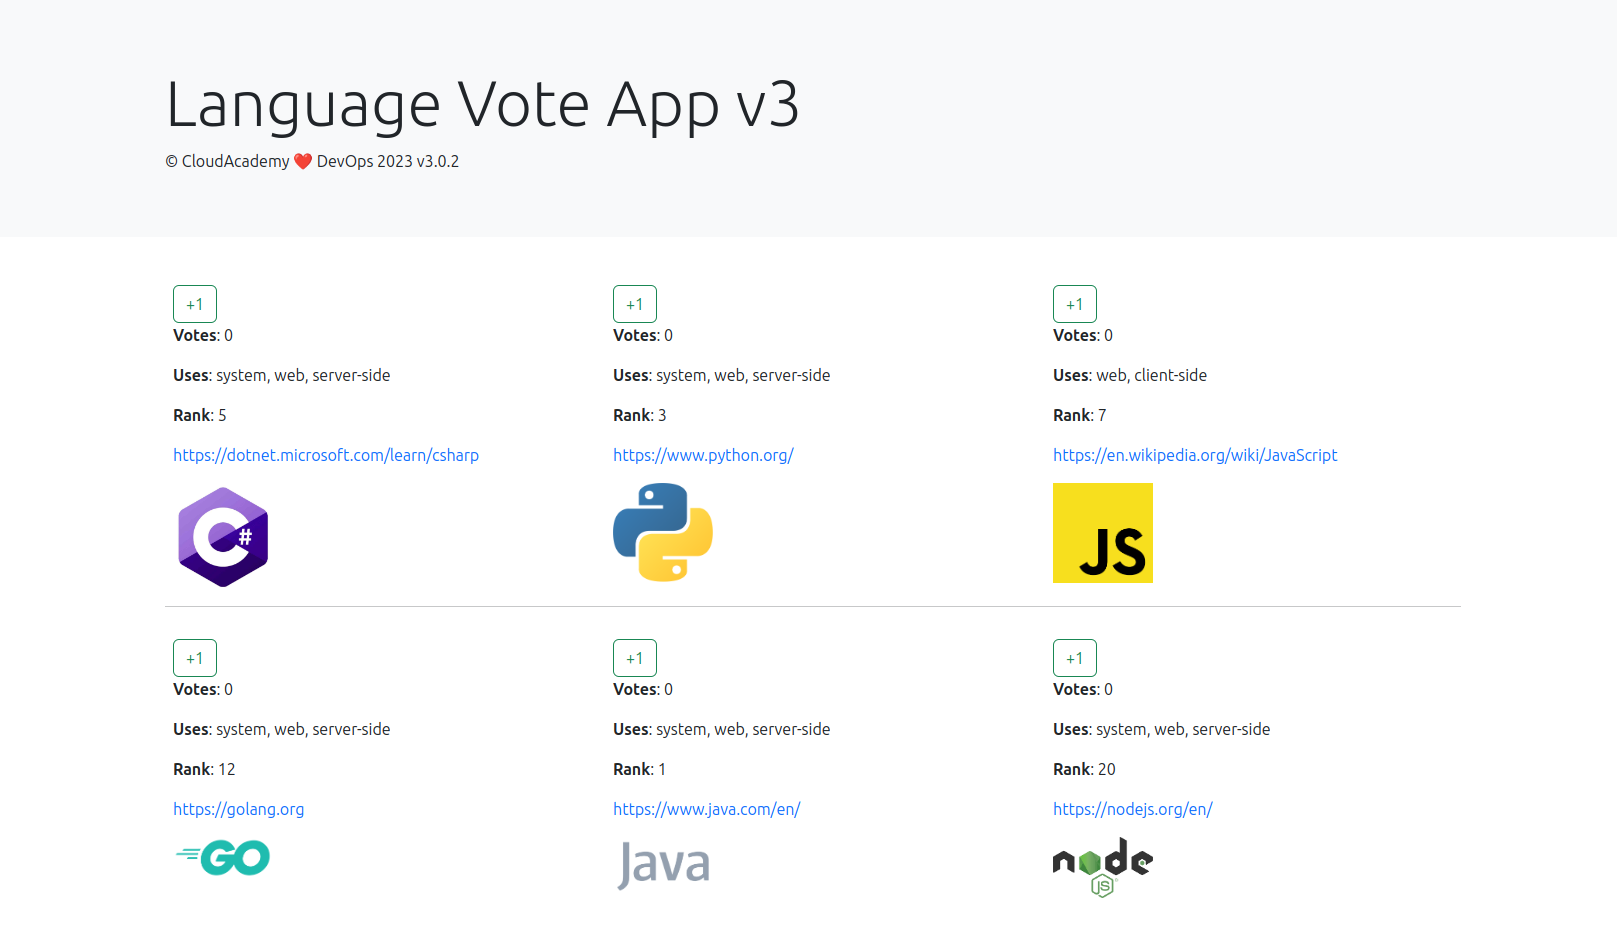 pragramming language voting app output